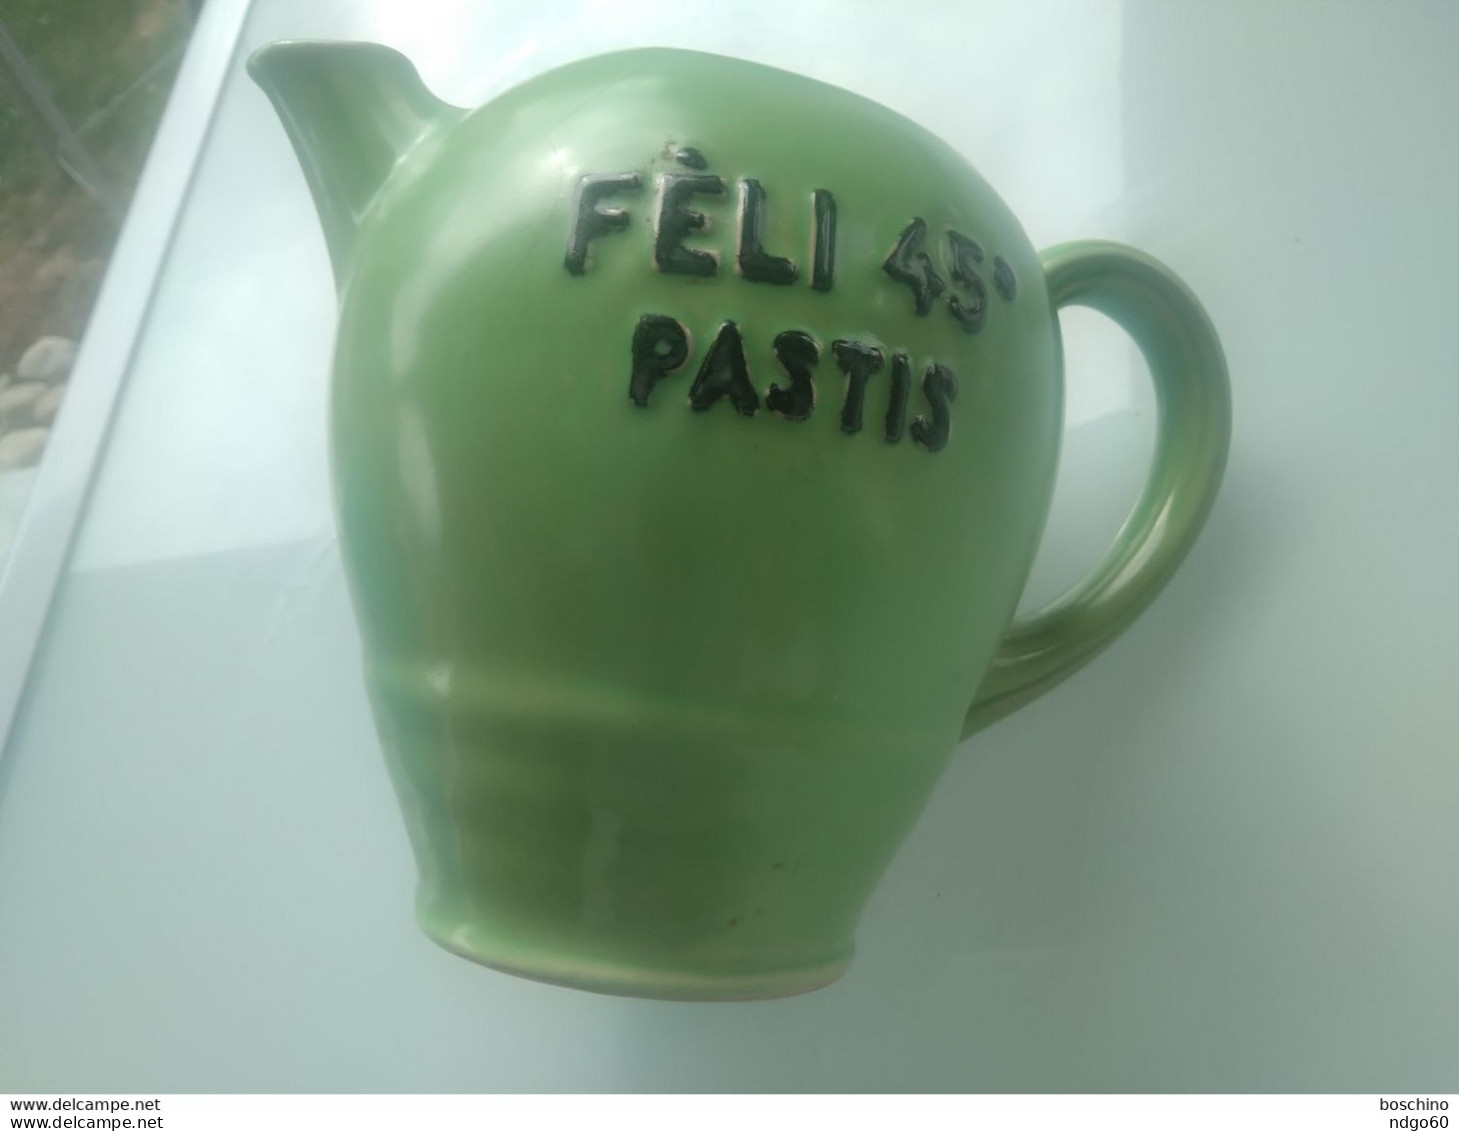 Carafe / Pichet Félix Pernod - Fèli 45° Pastis ( Porcelaine Revol à Saint Uze ) - Carafes